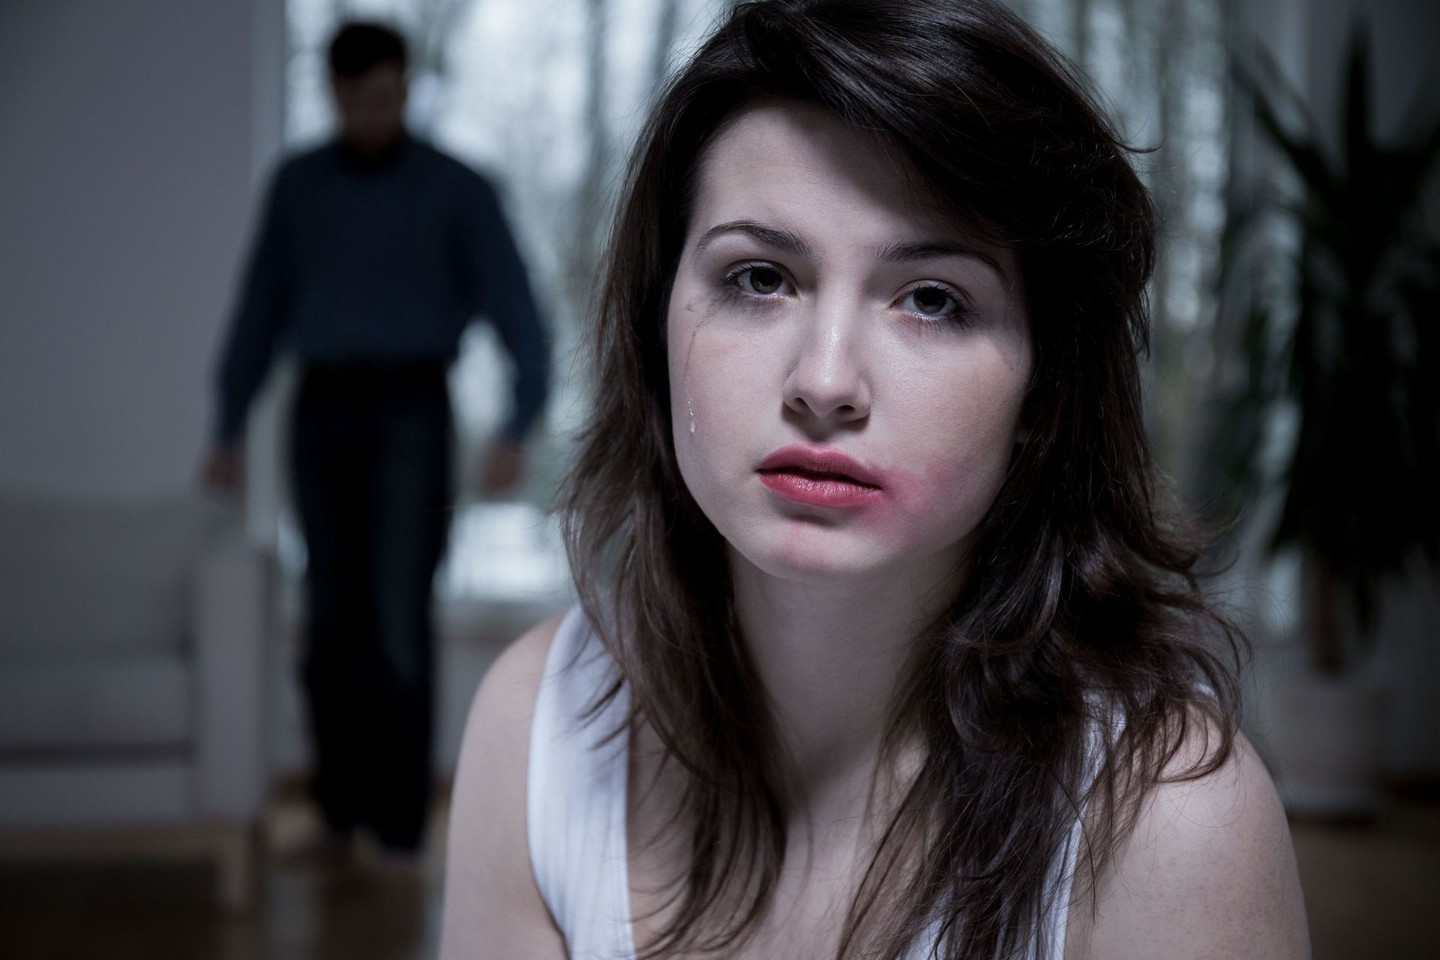 Daugelio šalių specialistai pripažįsta, jog smurtas šeimoje yra viena lyderiaujančių nusikaltimų rūšių.<br>123rf nuotr.